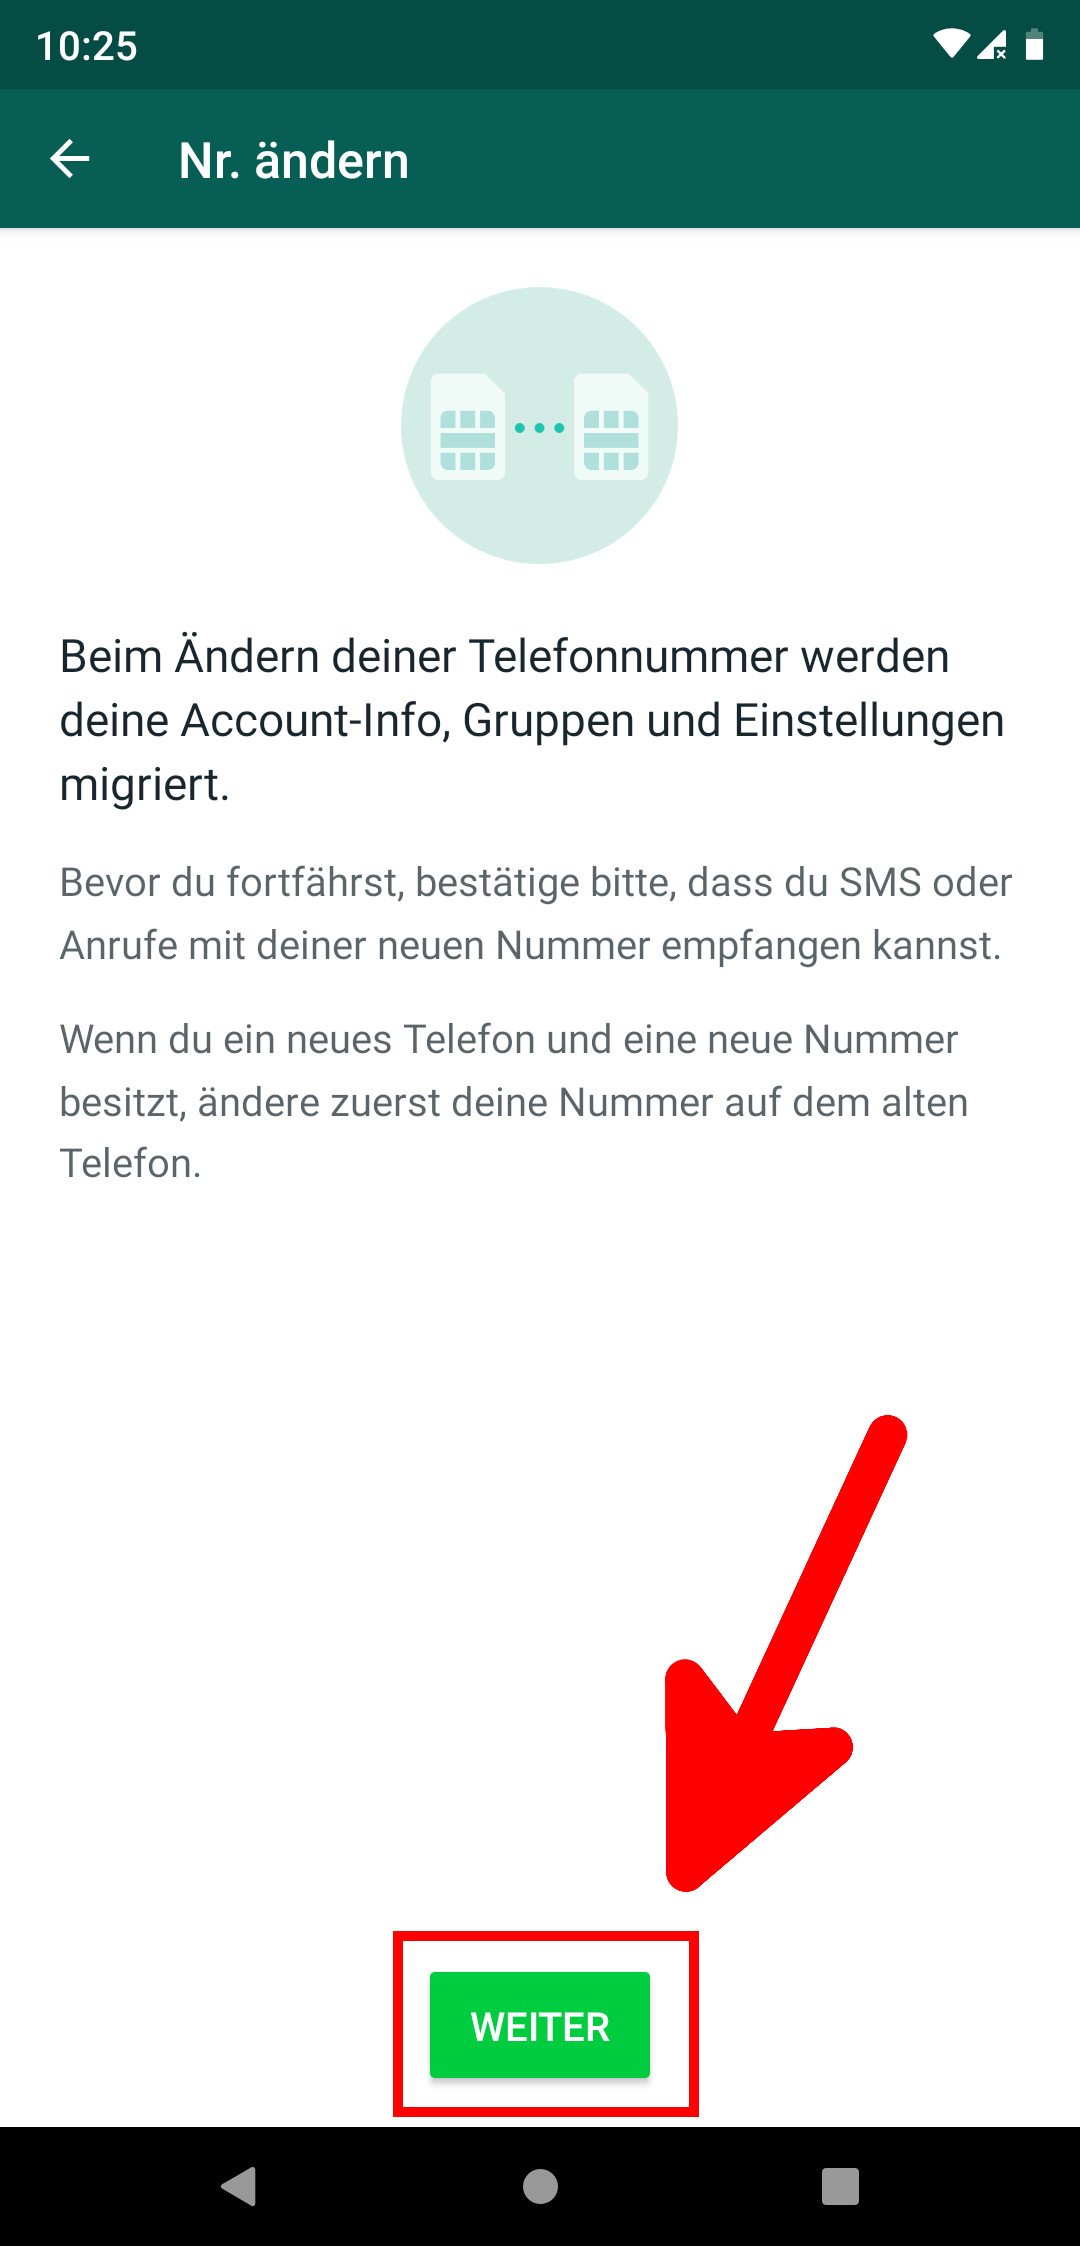 Mitteilen whatsapp nummer allen neue WhatsApp: So